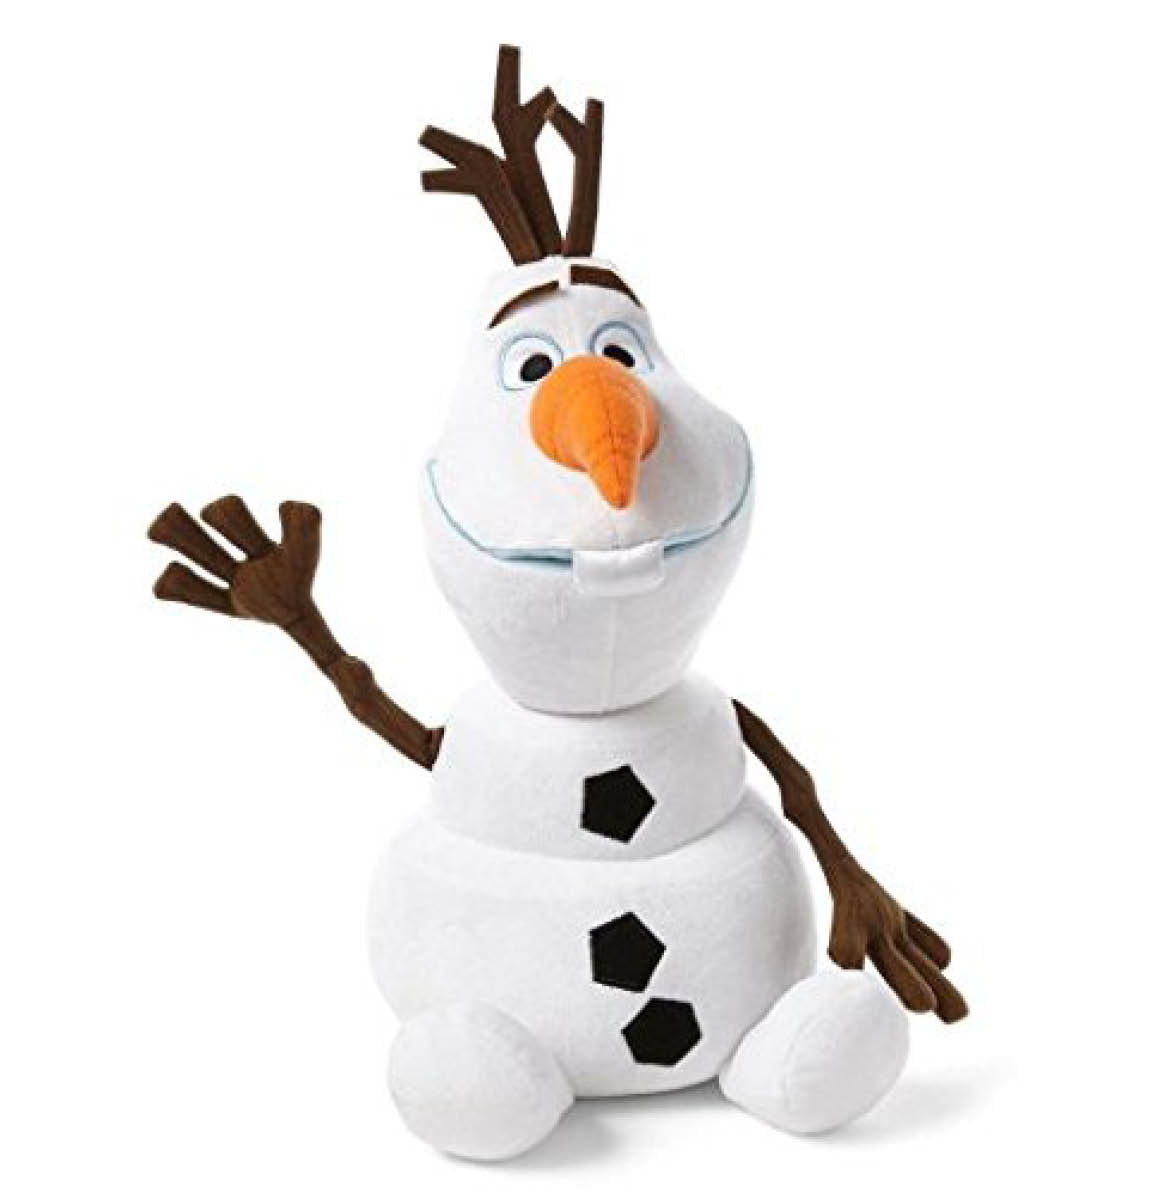 Disney Frozen Olaf Plush Doll